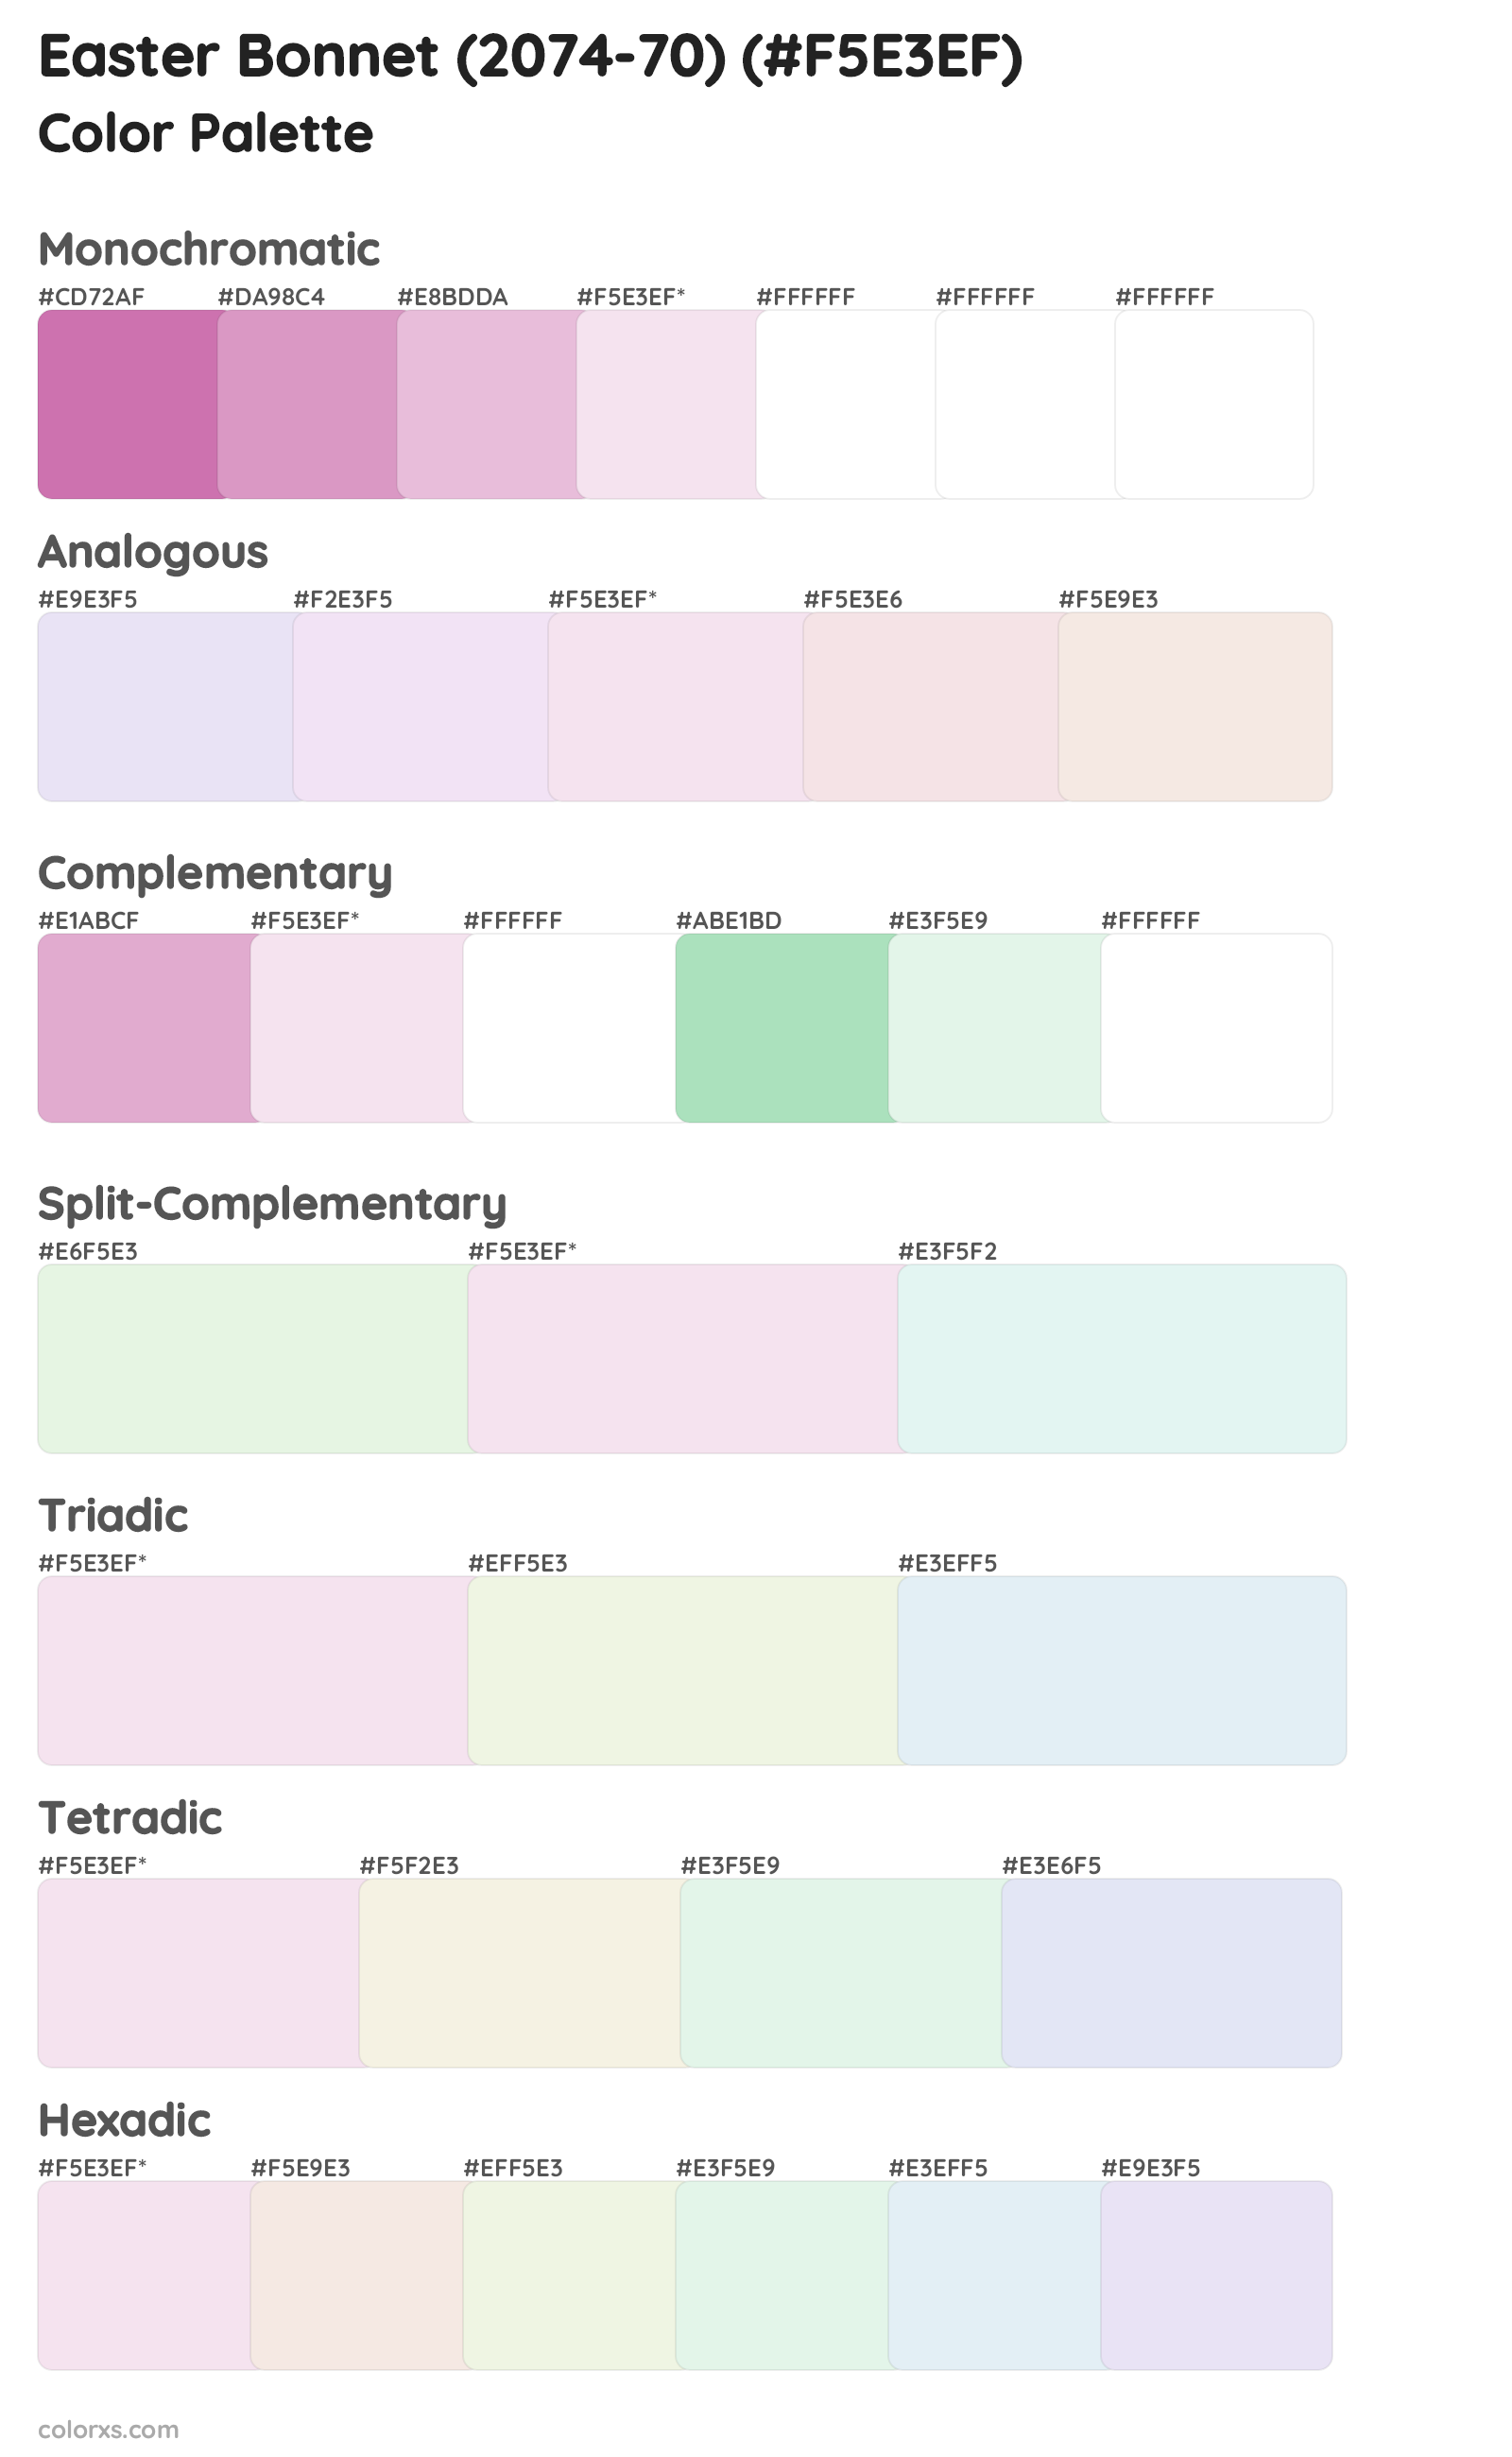 Easter Bonnet (2074-70) Color Scheme Palettes